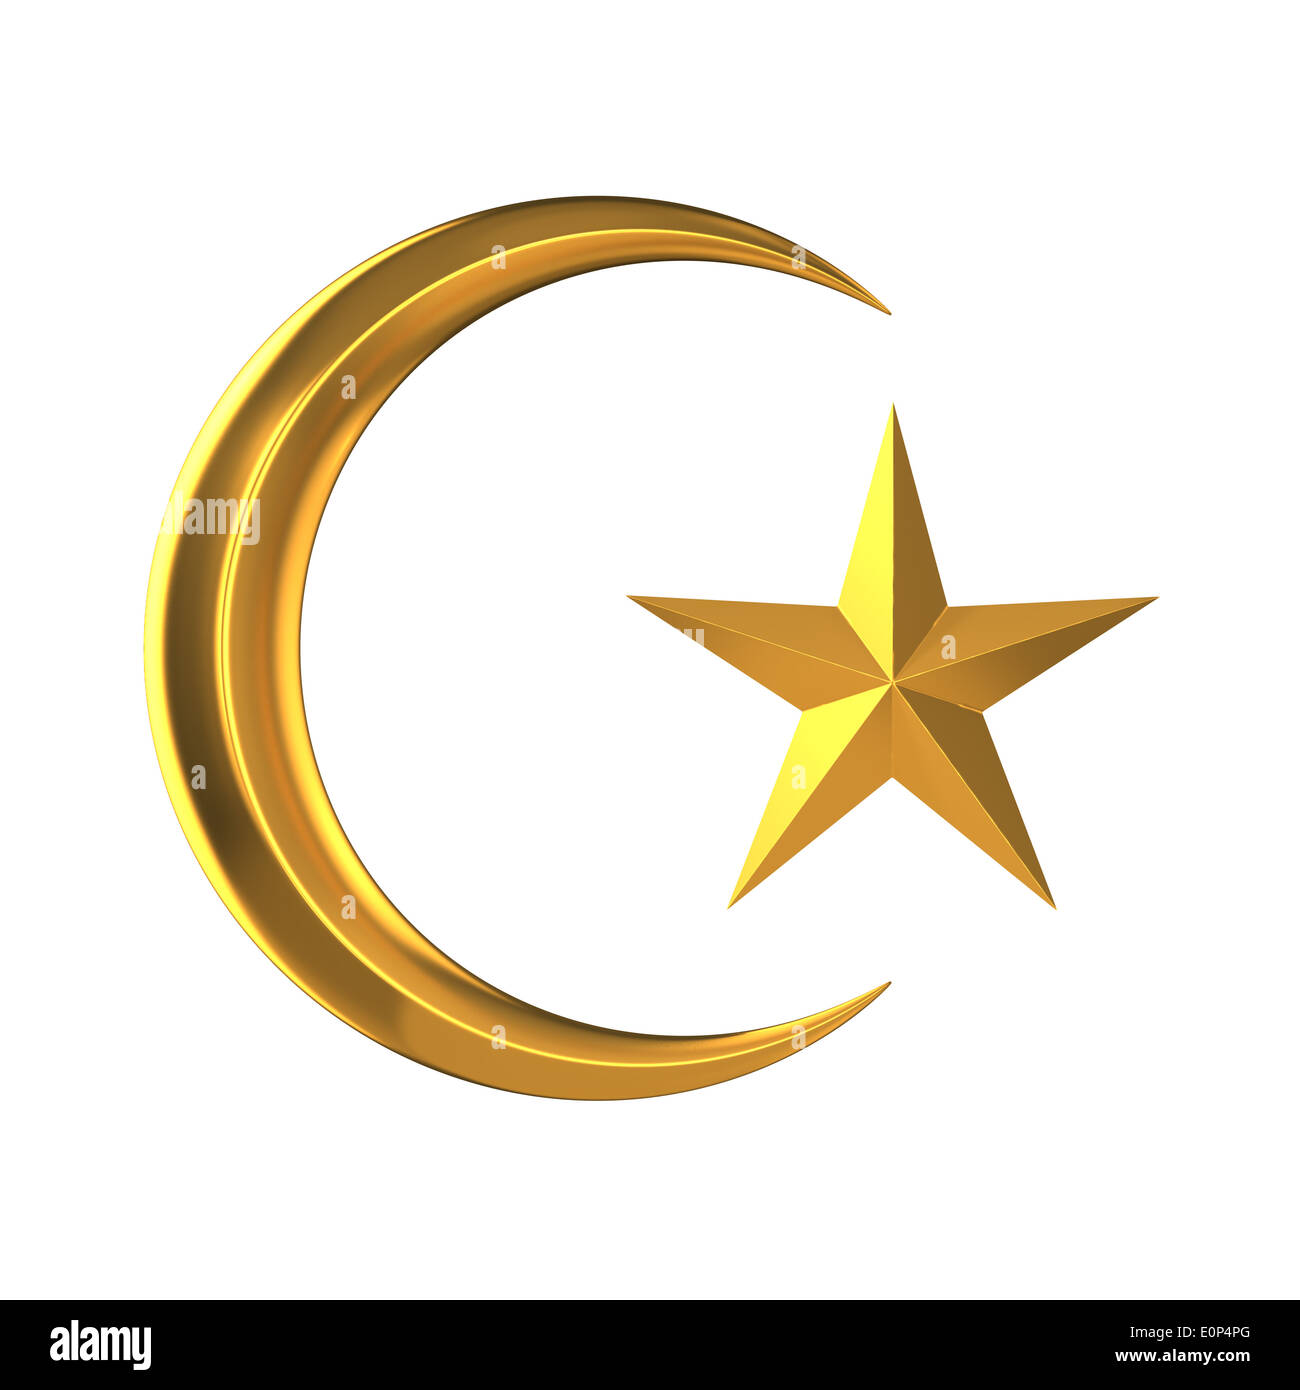 Printable Ramadan Moon And Star Template